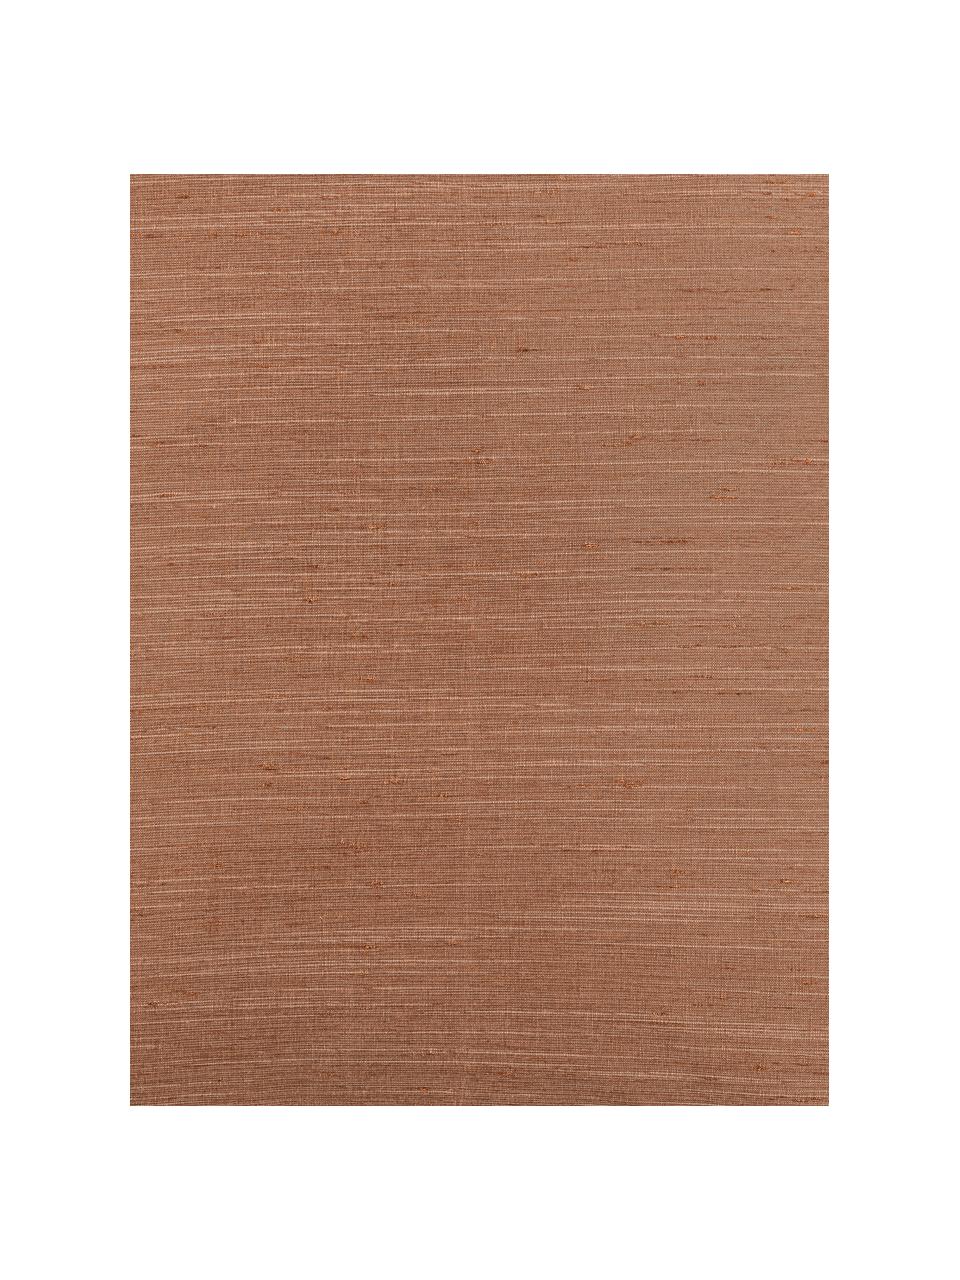 Kussenhoes Malu in zijdelook, 100% polyester, Bruin, 40 x 40 cm